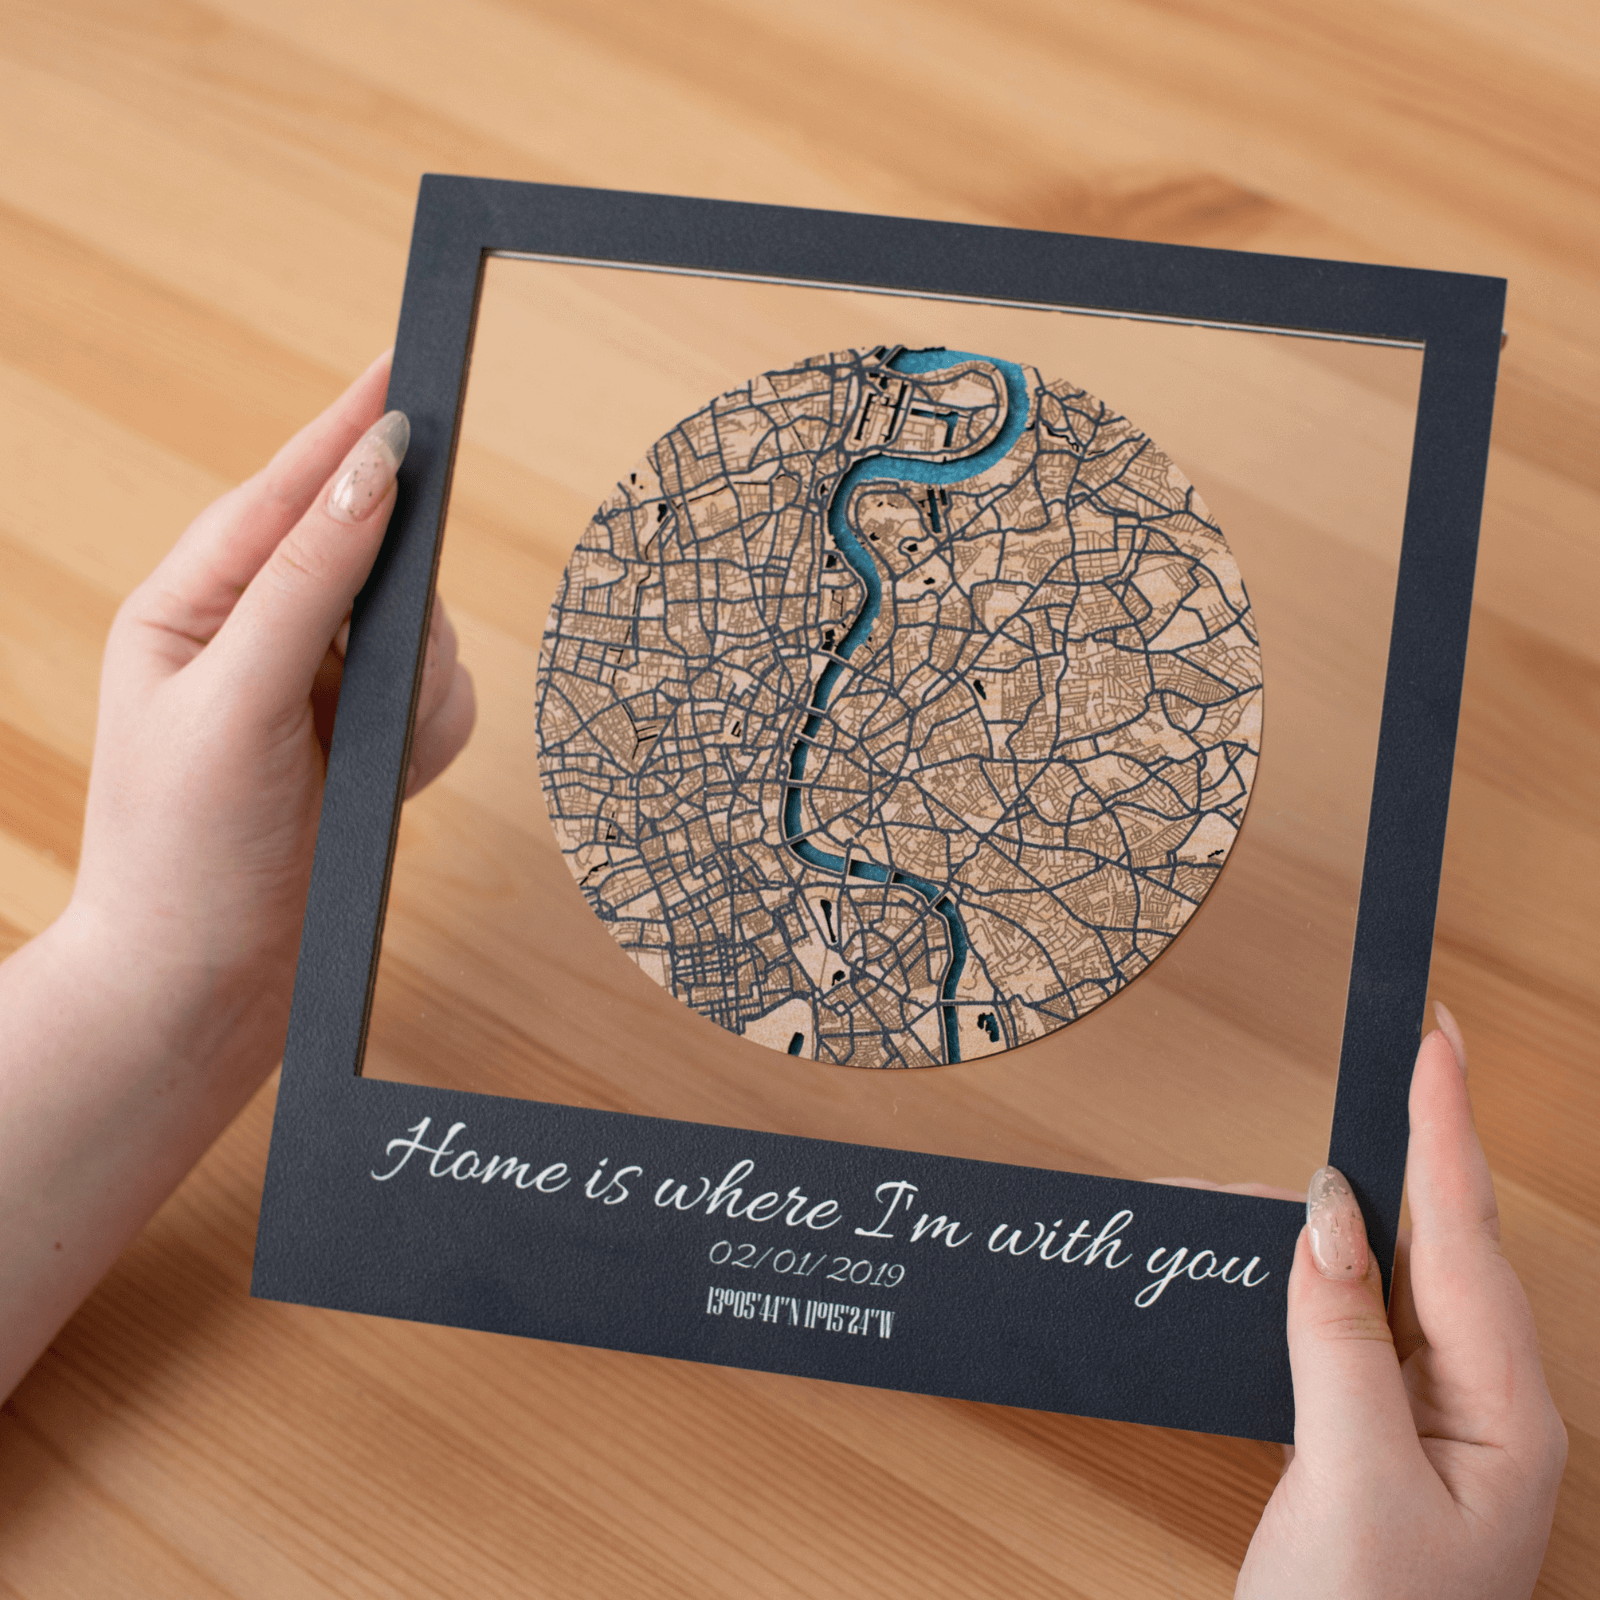  acrylic-based city maps